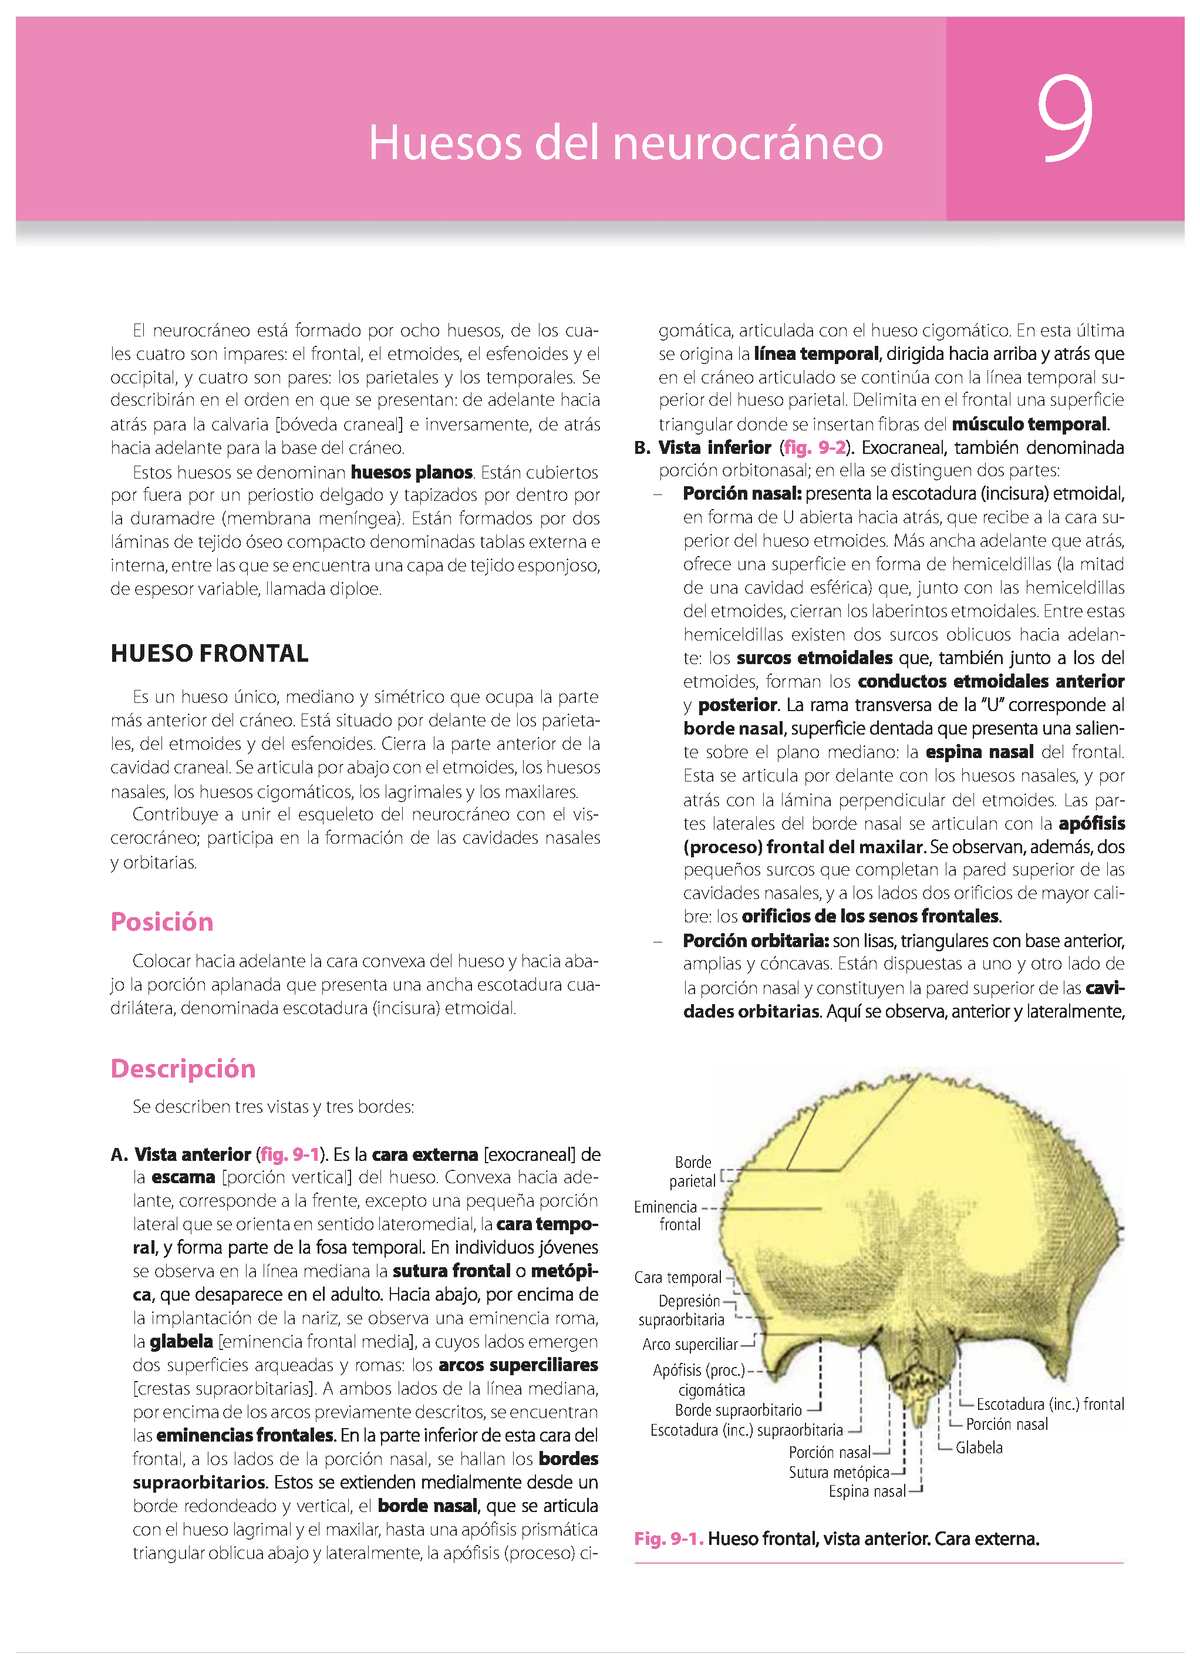 Huesos Del Cráneo Huesos Del Neurocráneo 9 El Neurocráneo Está Formado Por Ocho Huesos De Los 3521